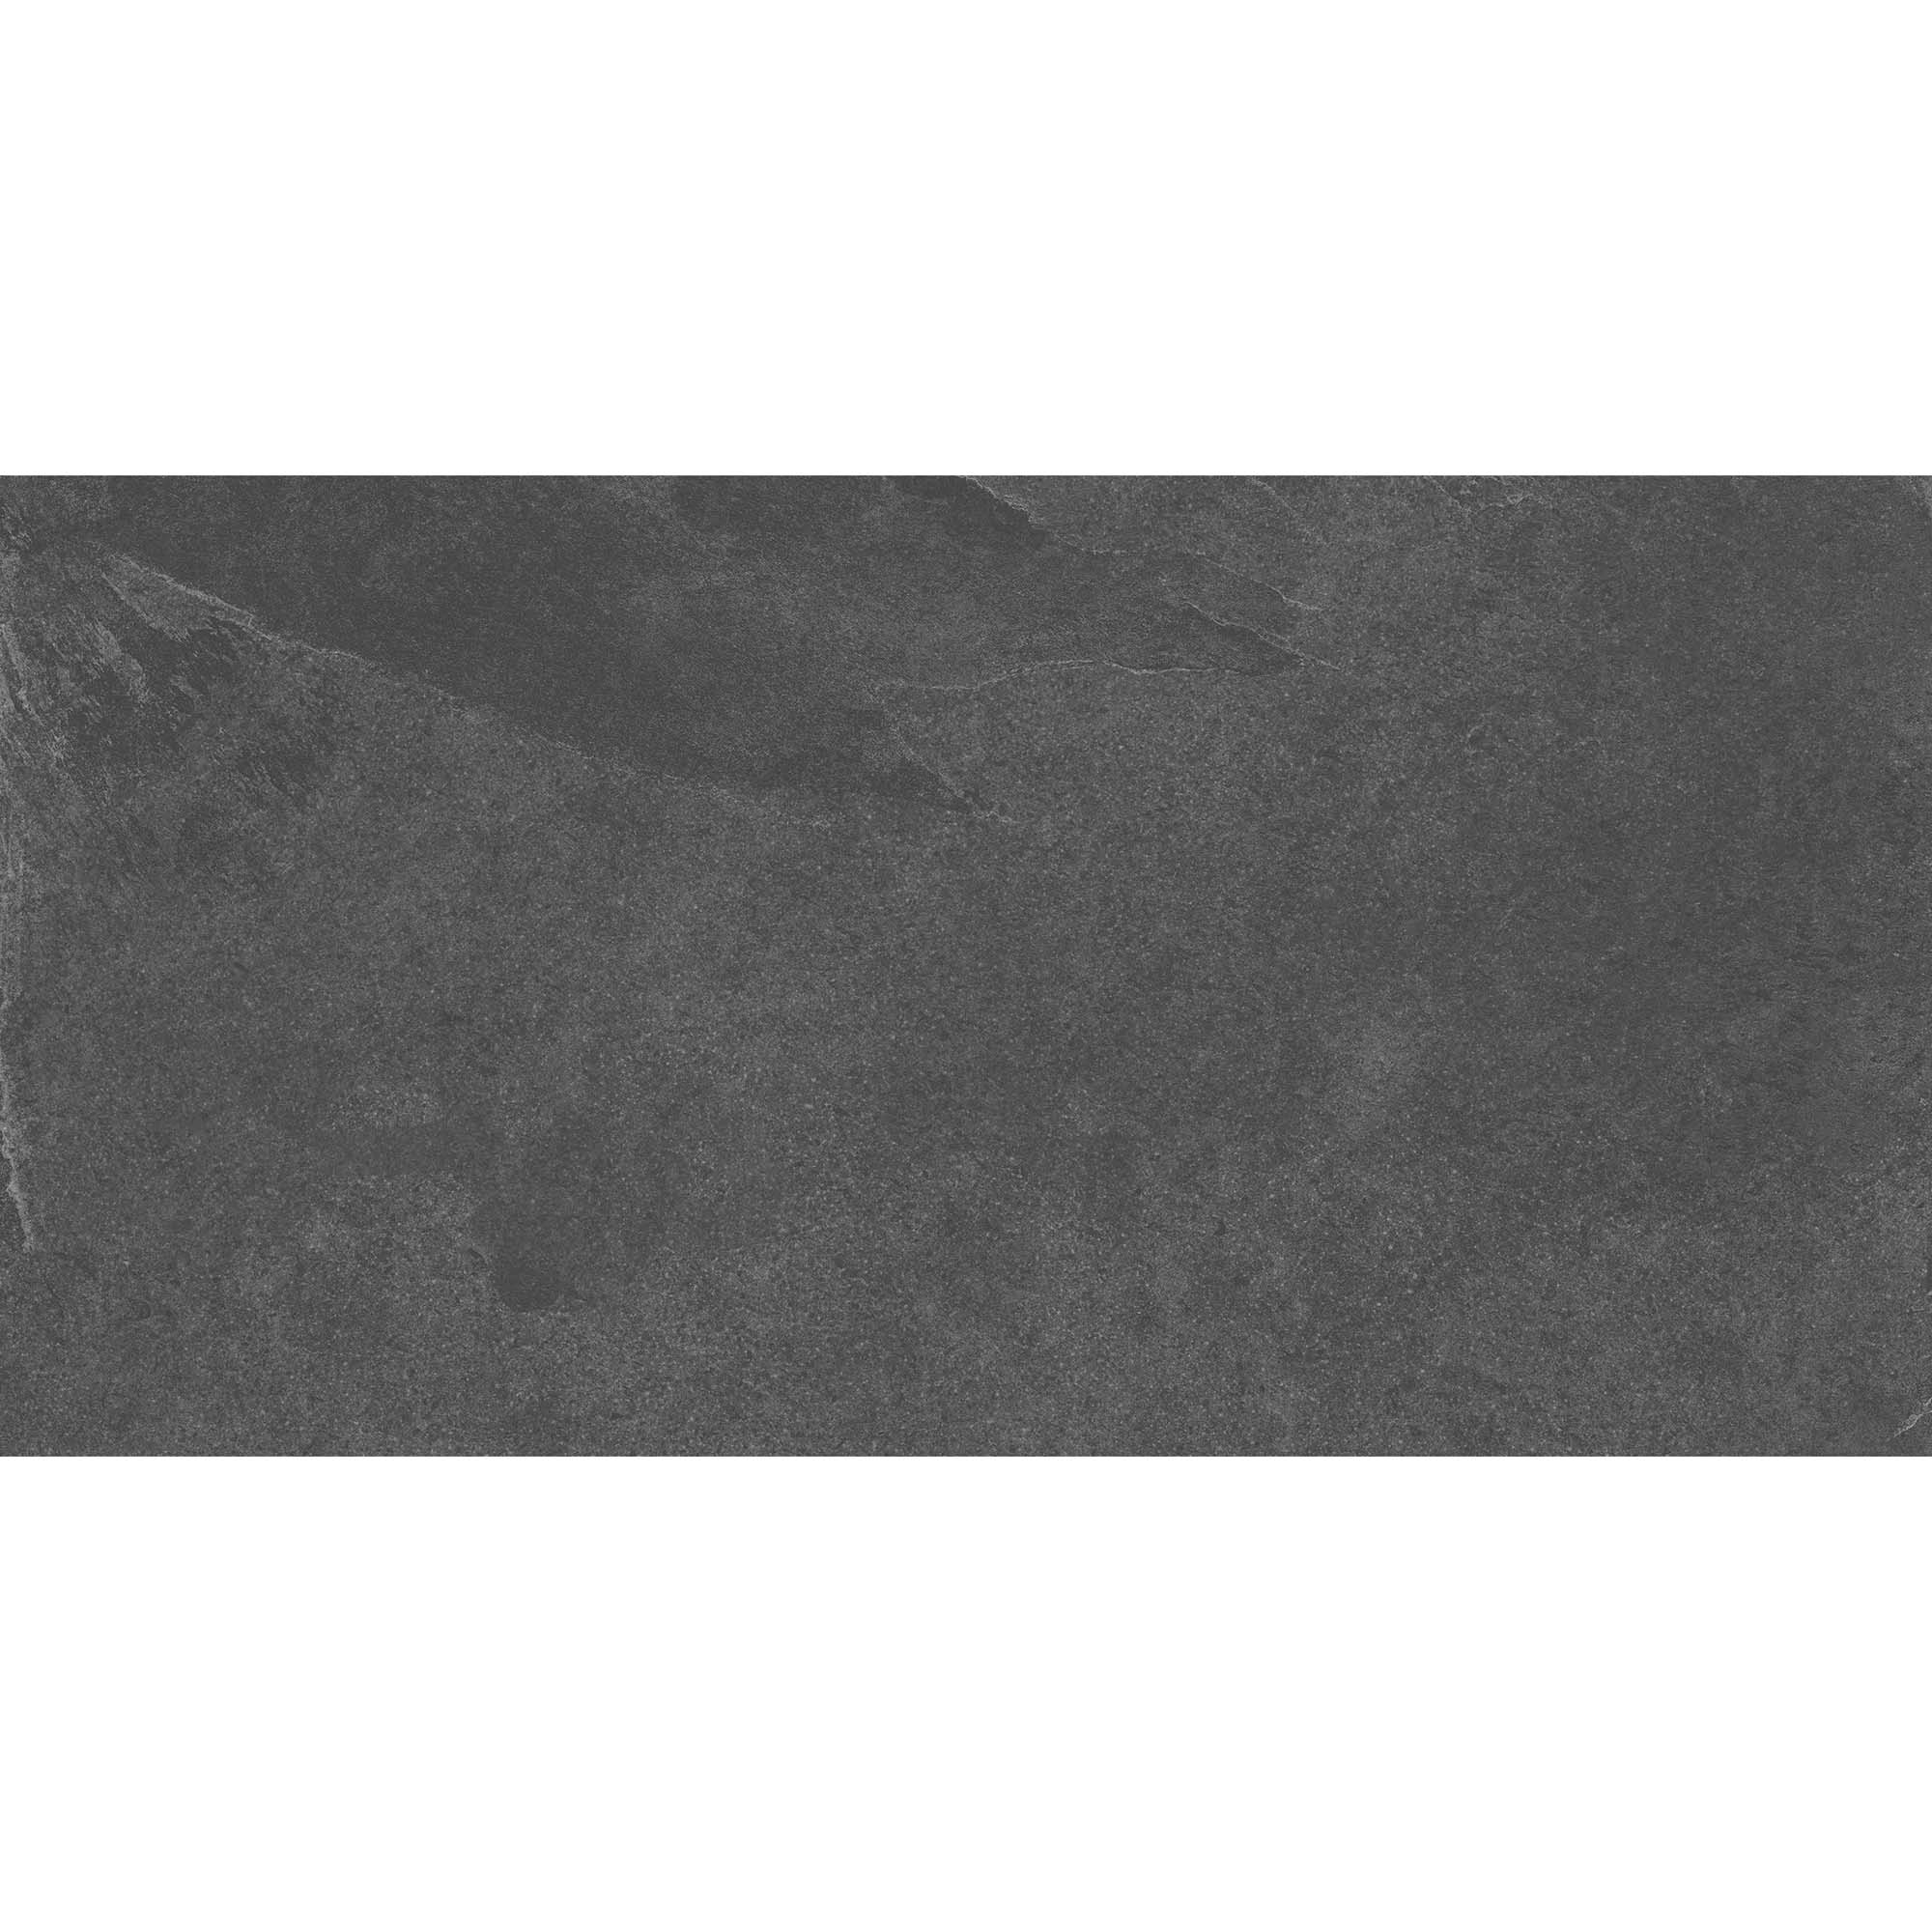 Плитка Estima Terra TE04 неполированный черный 60x120 см плитка estima terra te04 неполированный 60x120 см